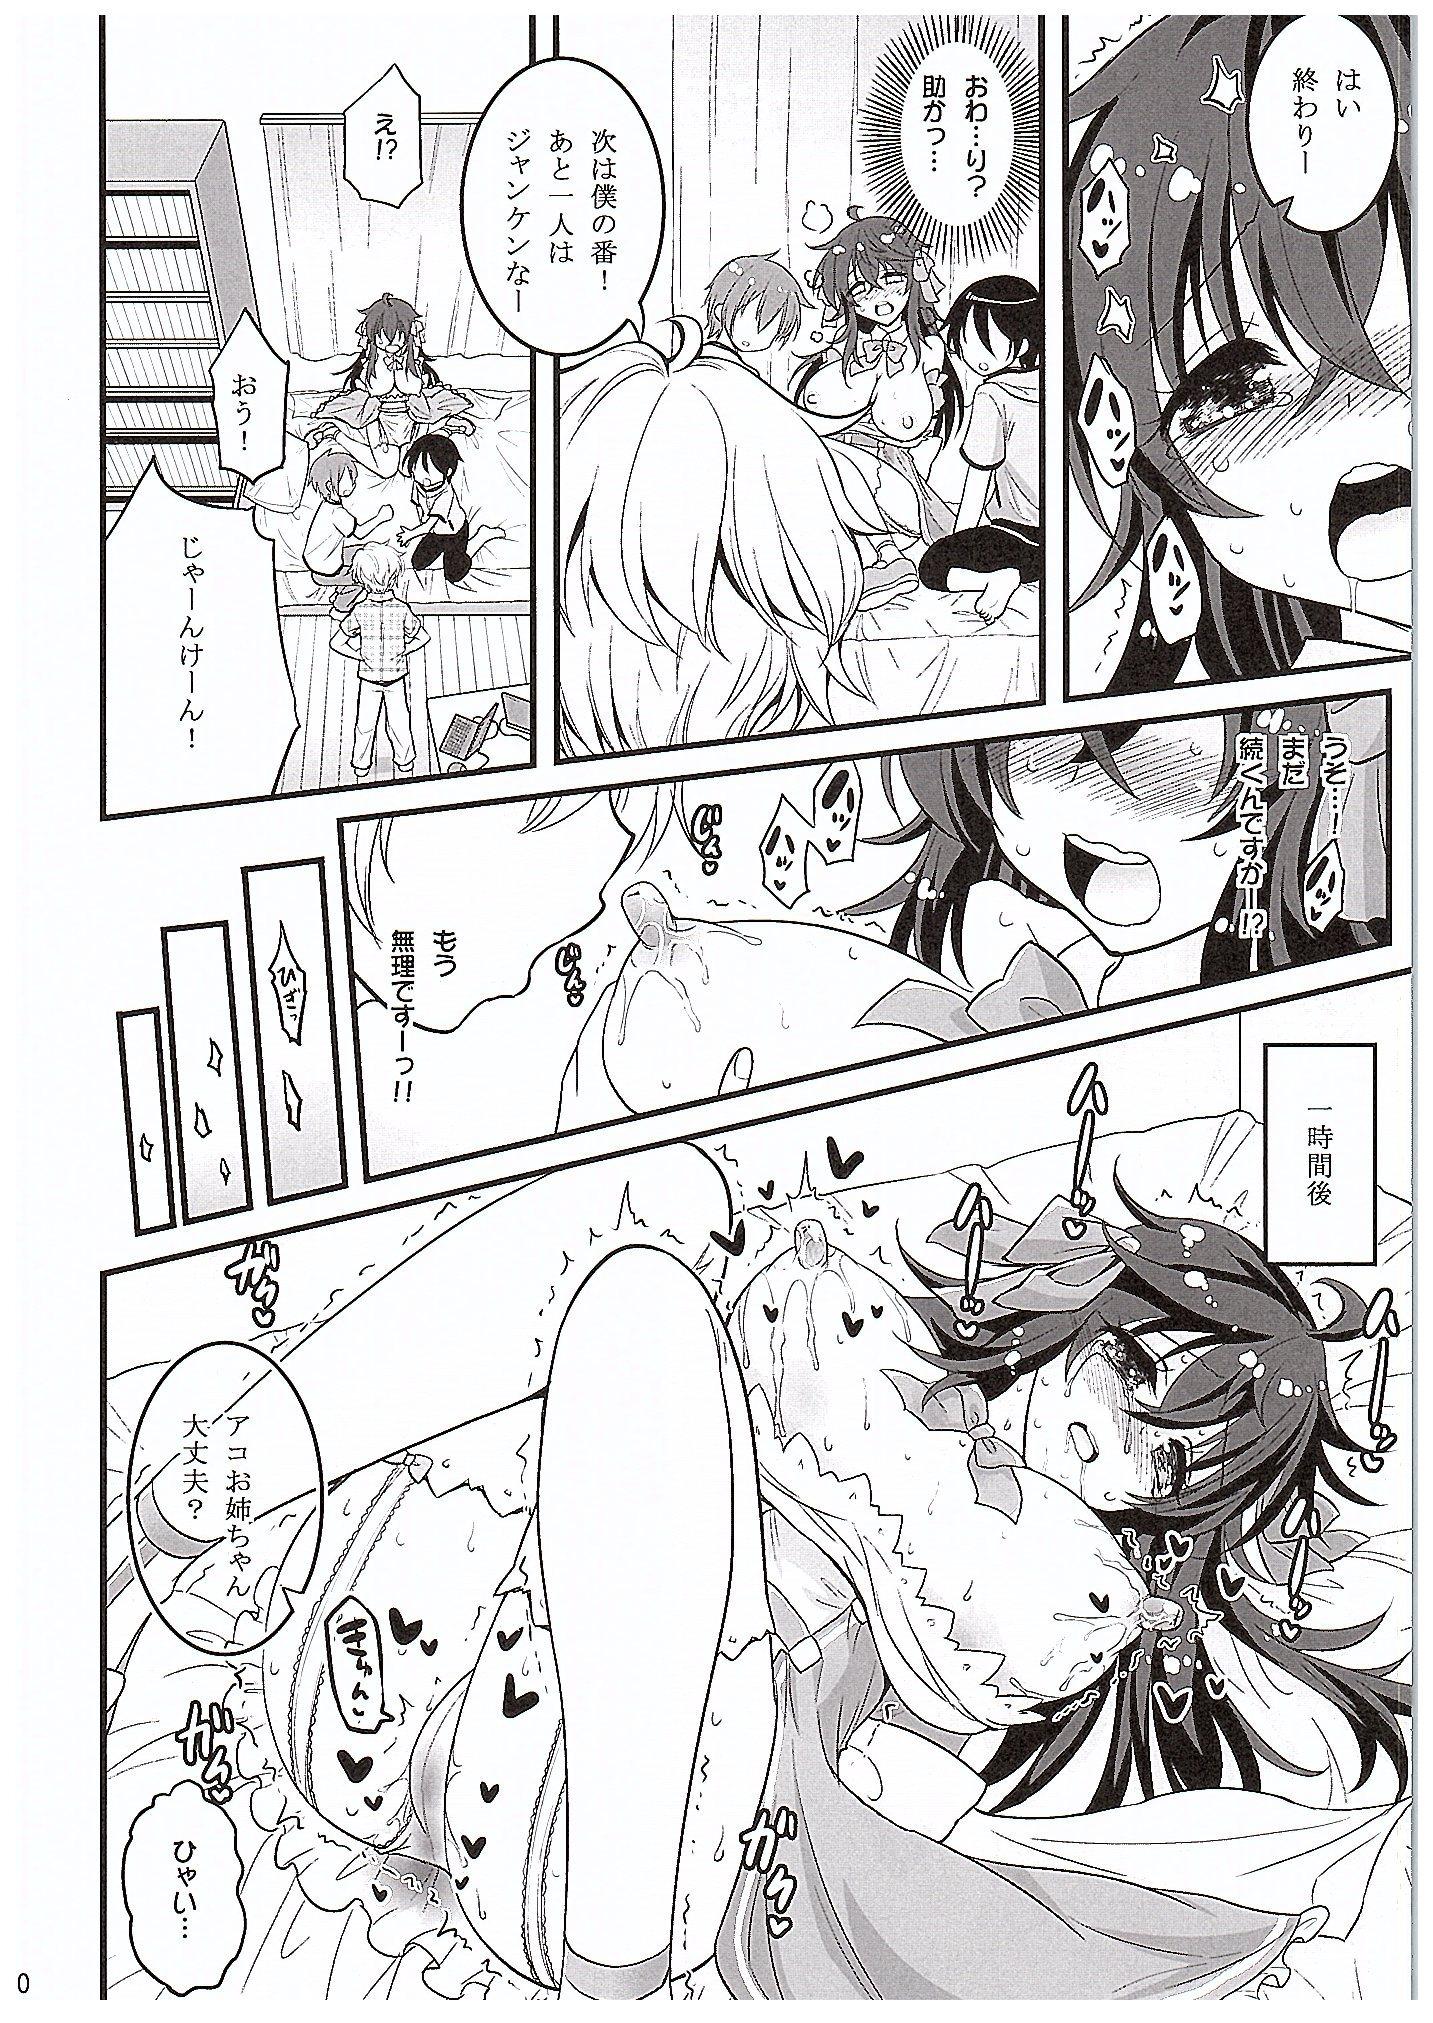 Lez Netoge no Yome to Shota no Himitsu Training - Netoge no yome wa onnanoko ja nai to omotta Cosplay - Page 9